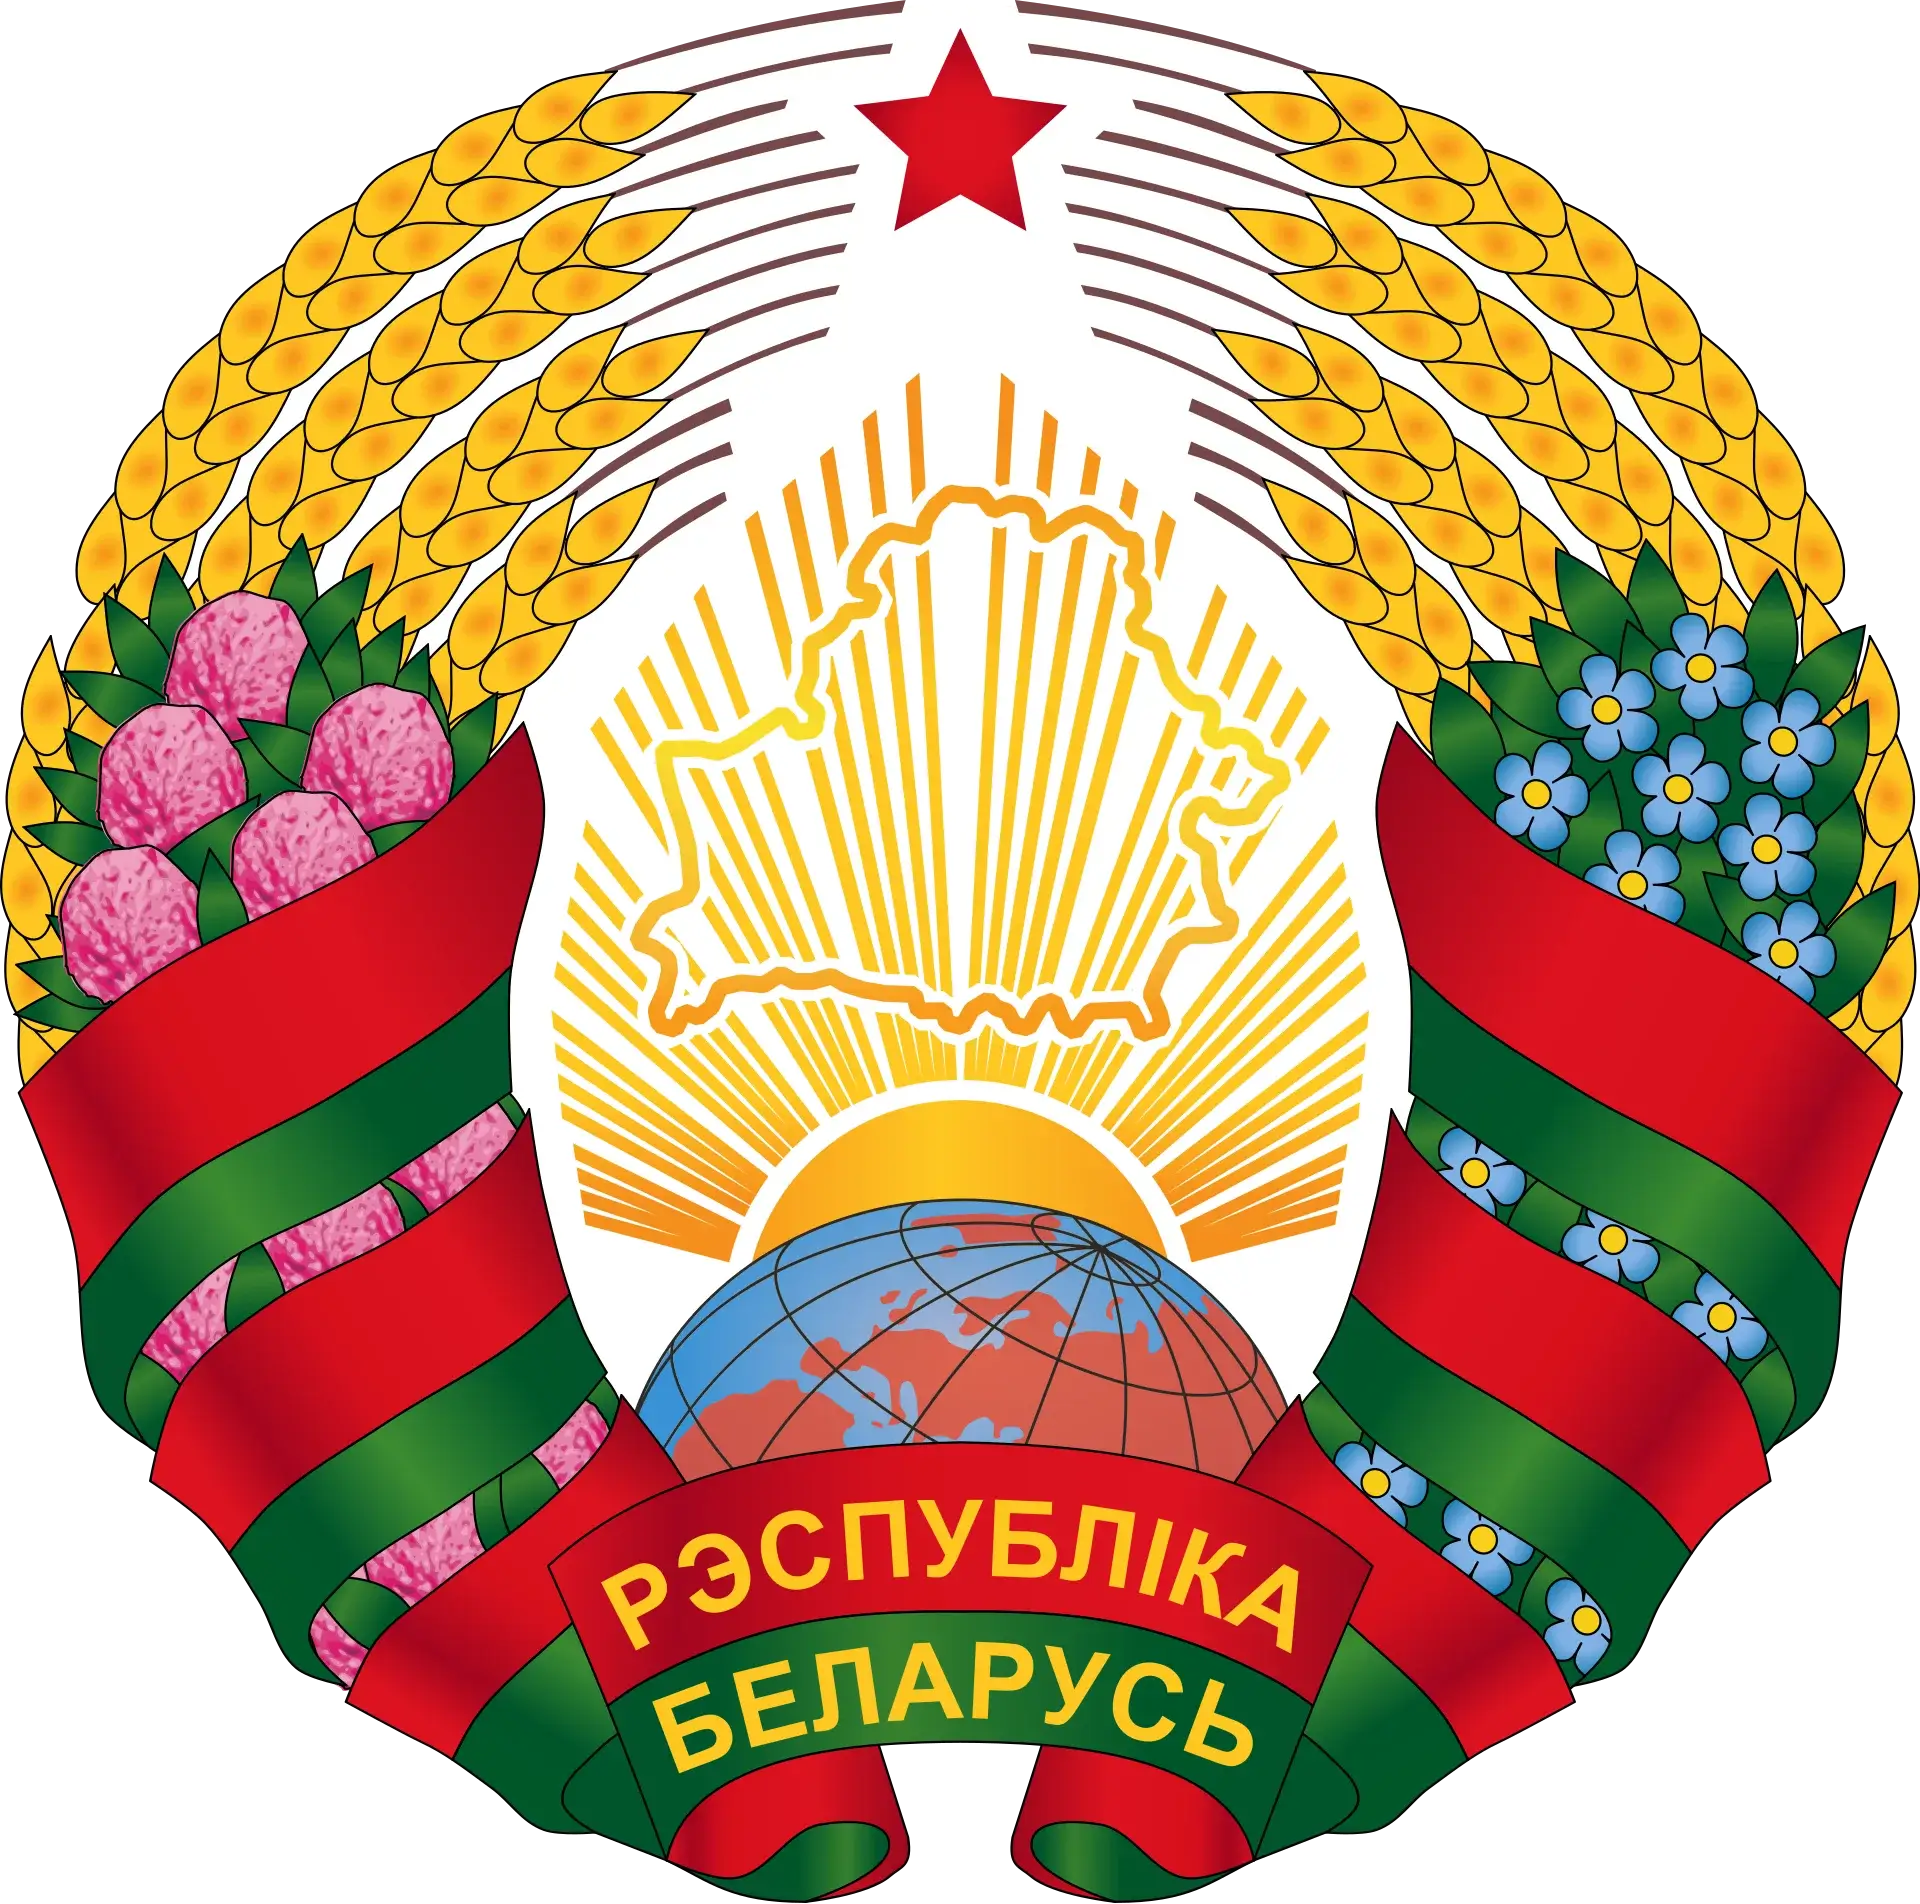 Логотип Республики Беларусь